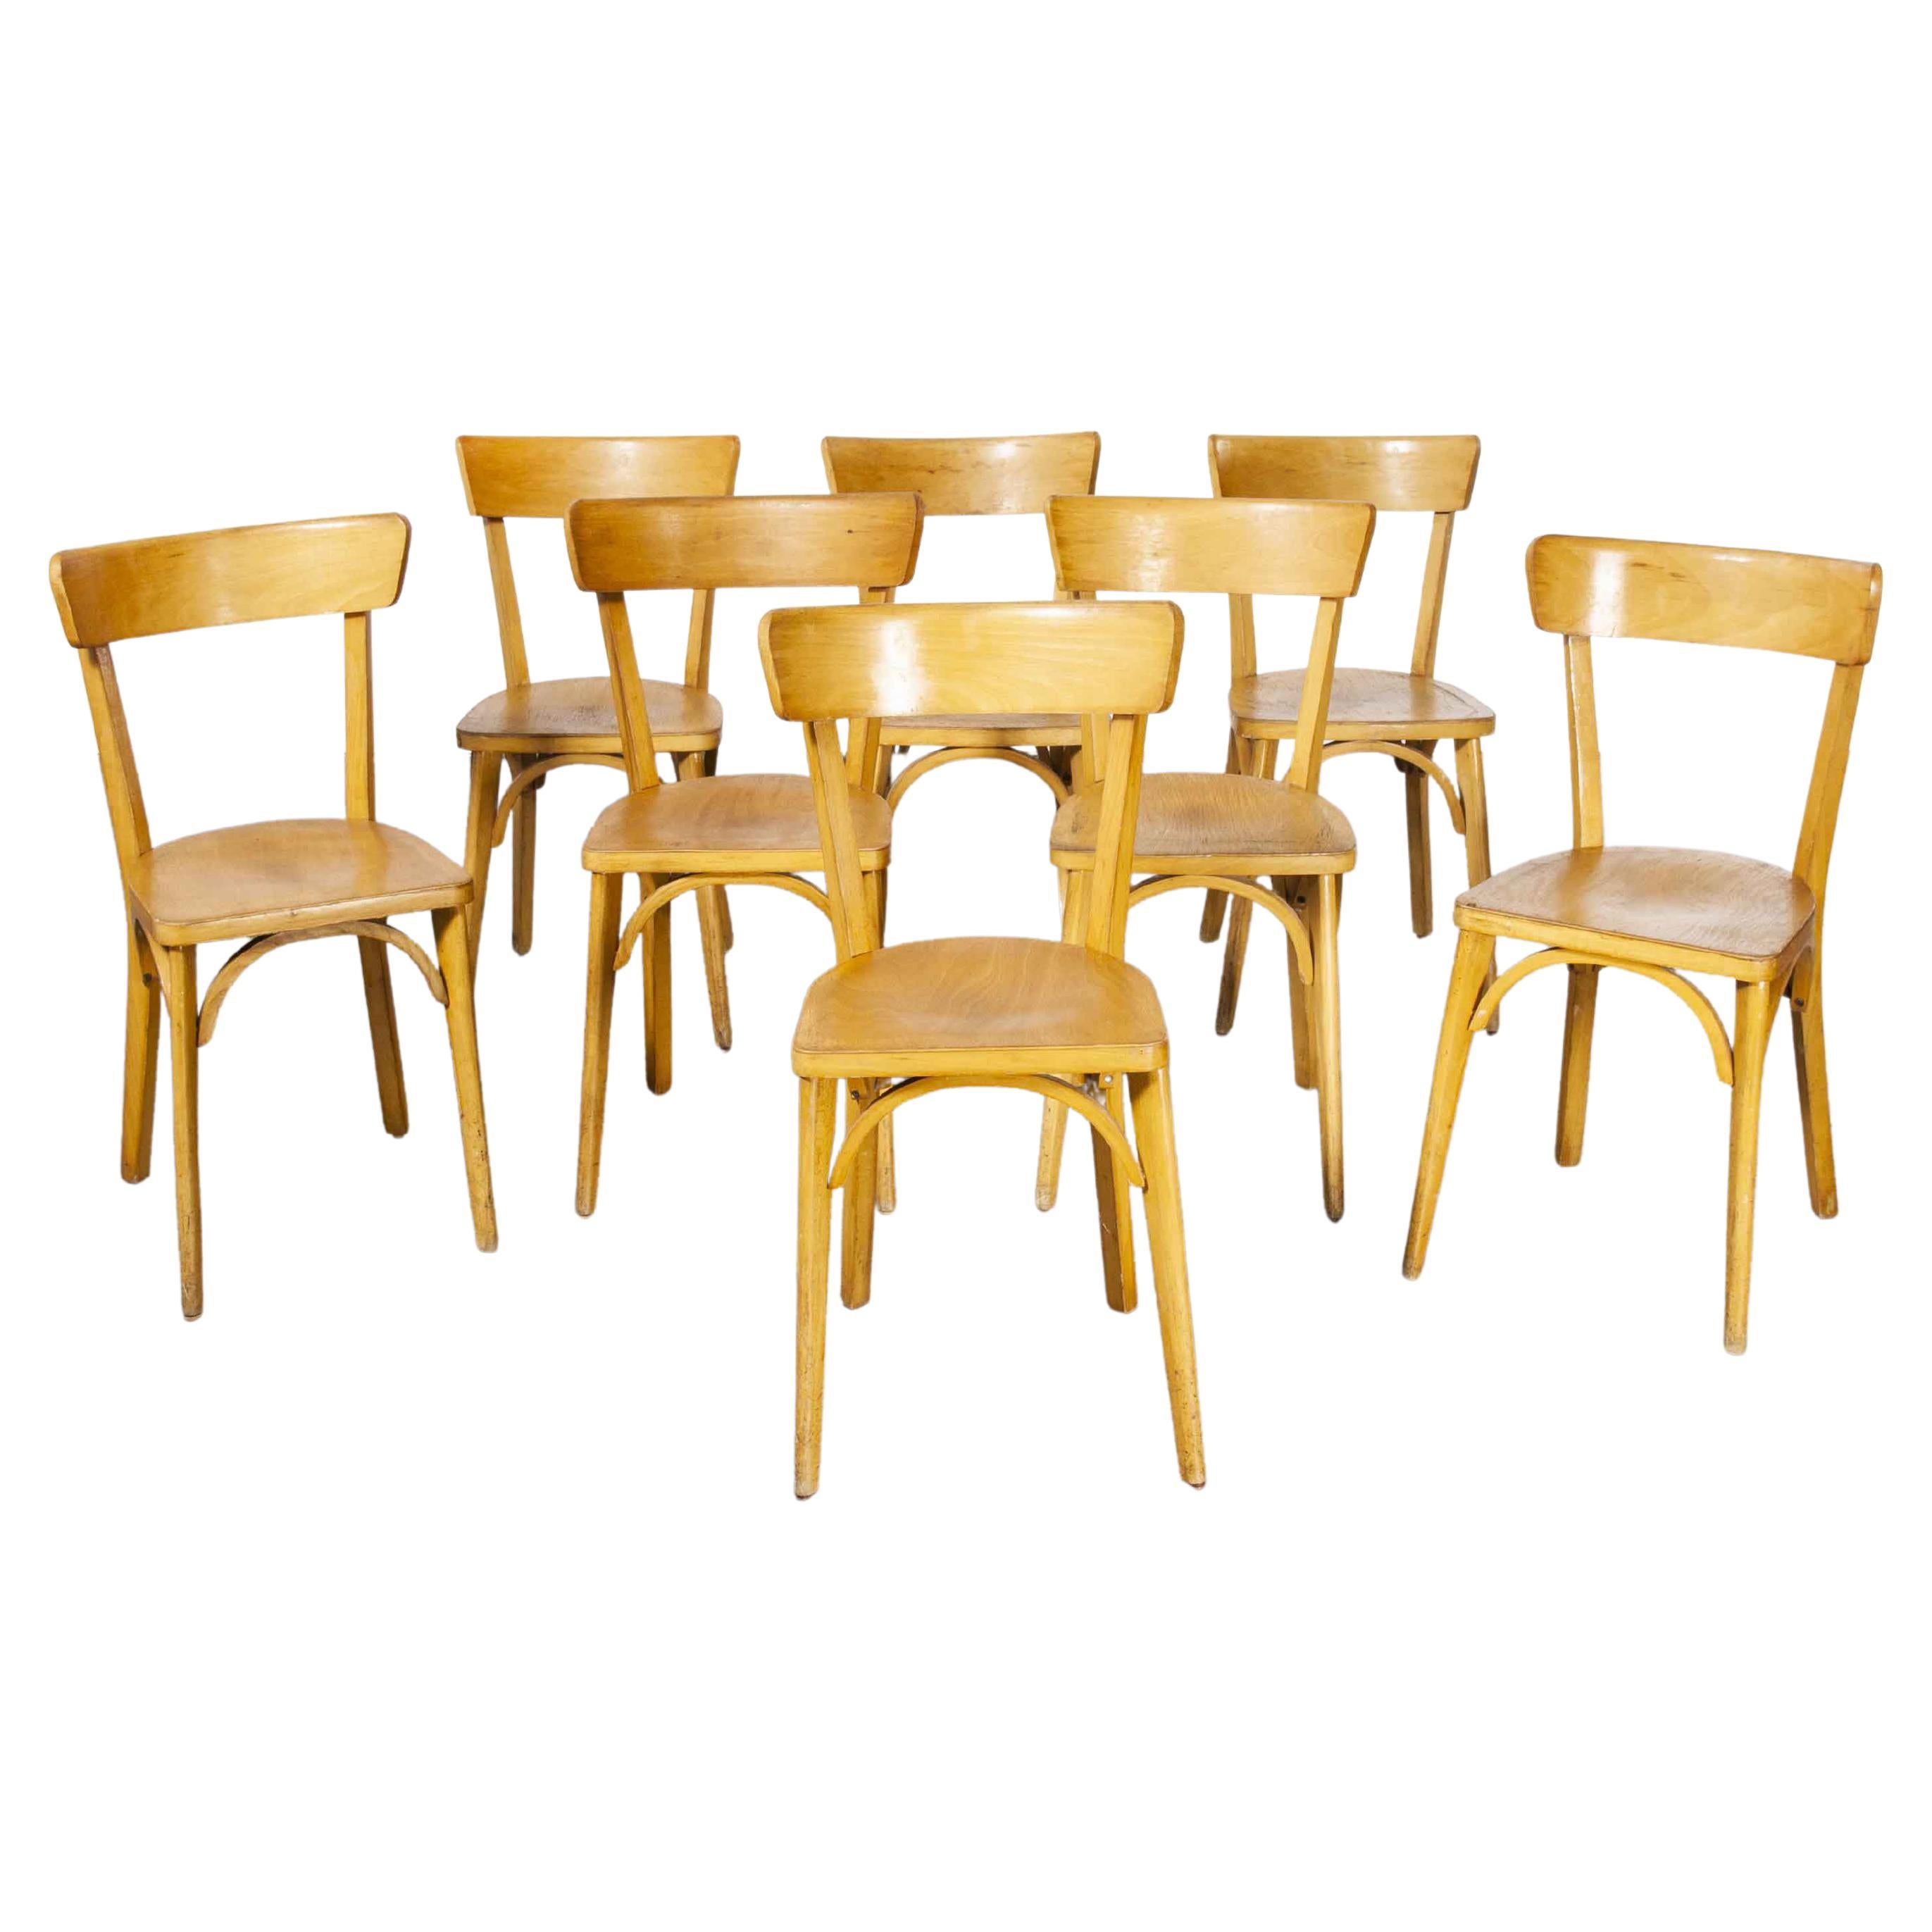 Chaises de salle à manger en contreplaqué Luterma des années 1950, ensemble de huit chaises 'modèle OB'.